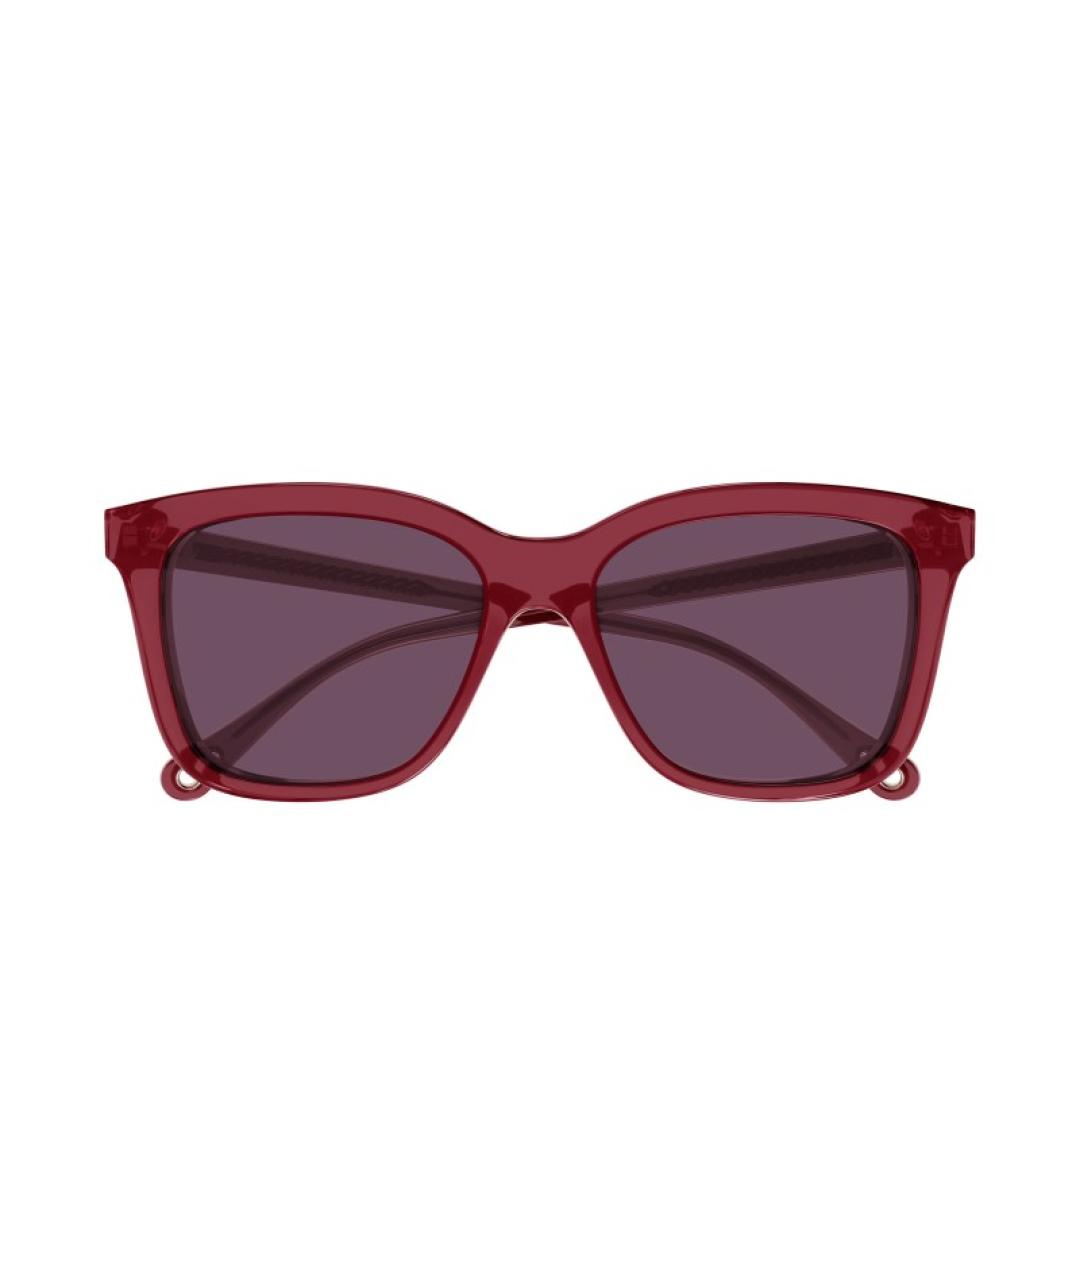 CHLOE Бордовые солнцезащитные очки, фото 1